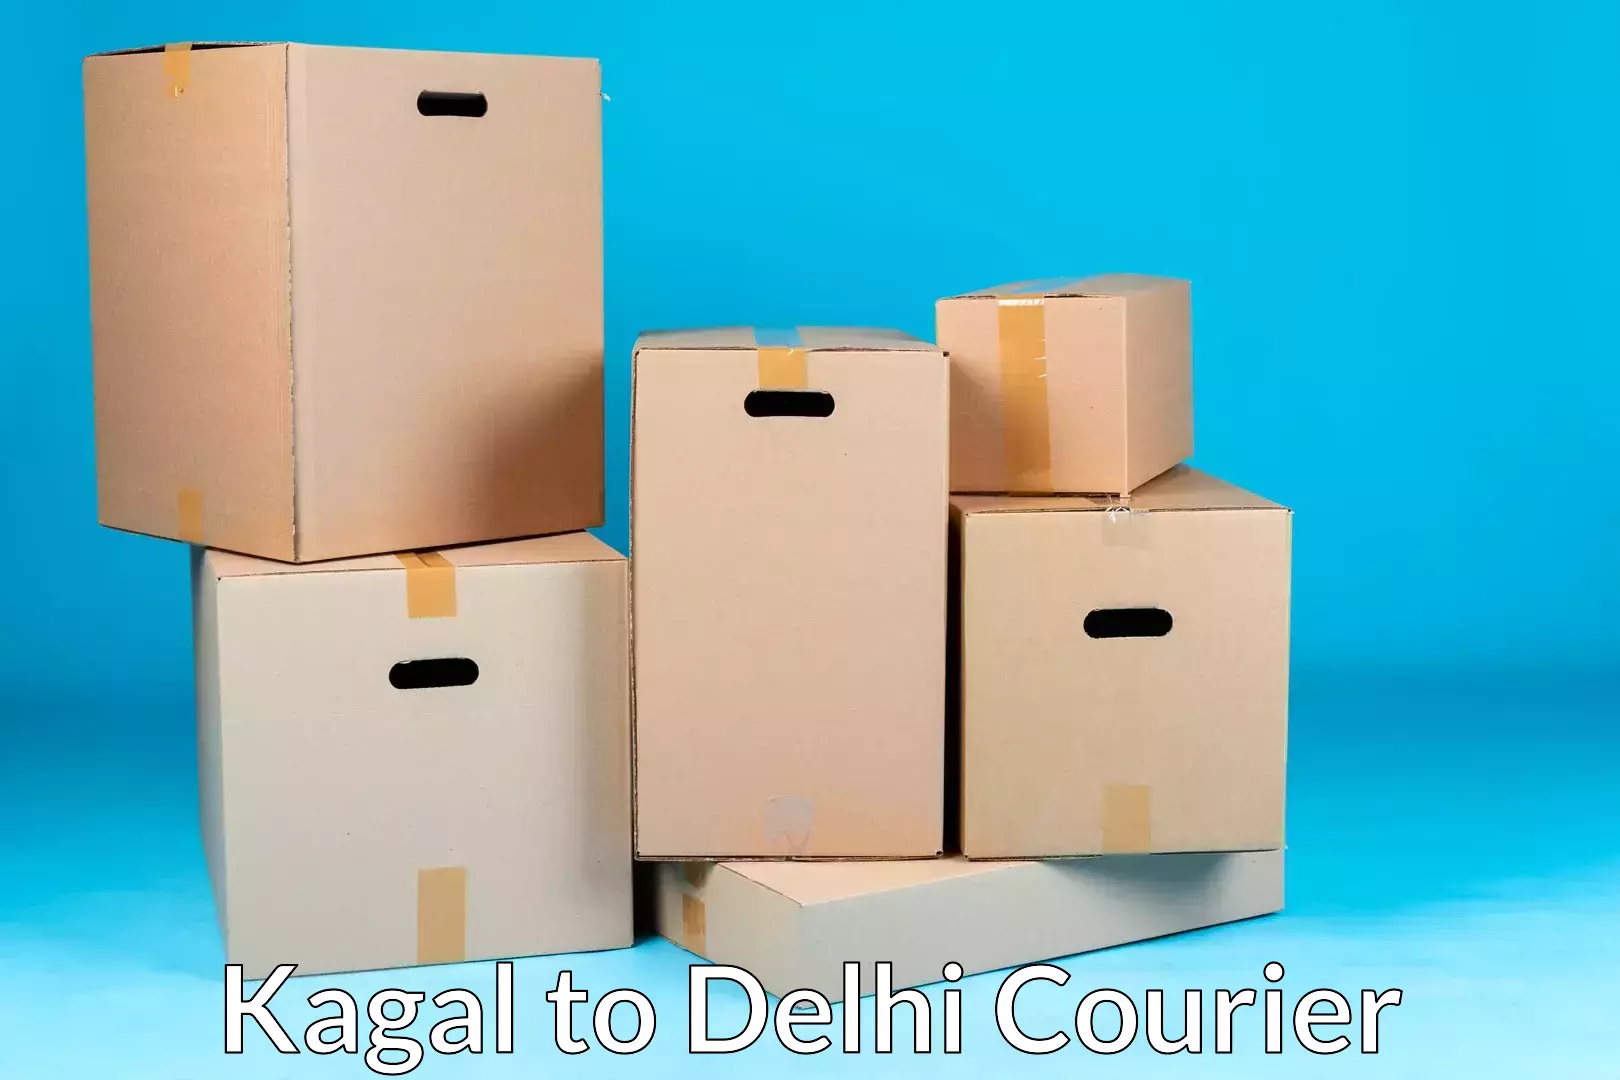 Seamless moving process Kagal to Subhash Nagar